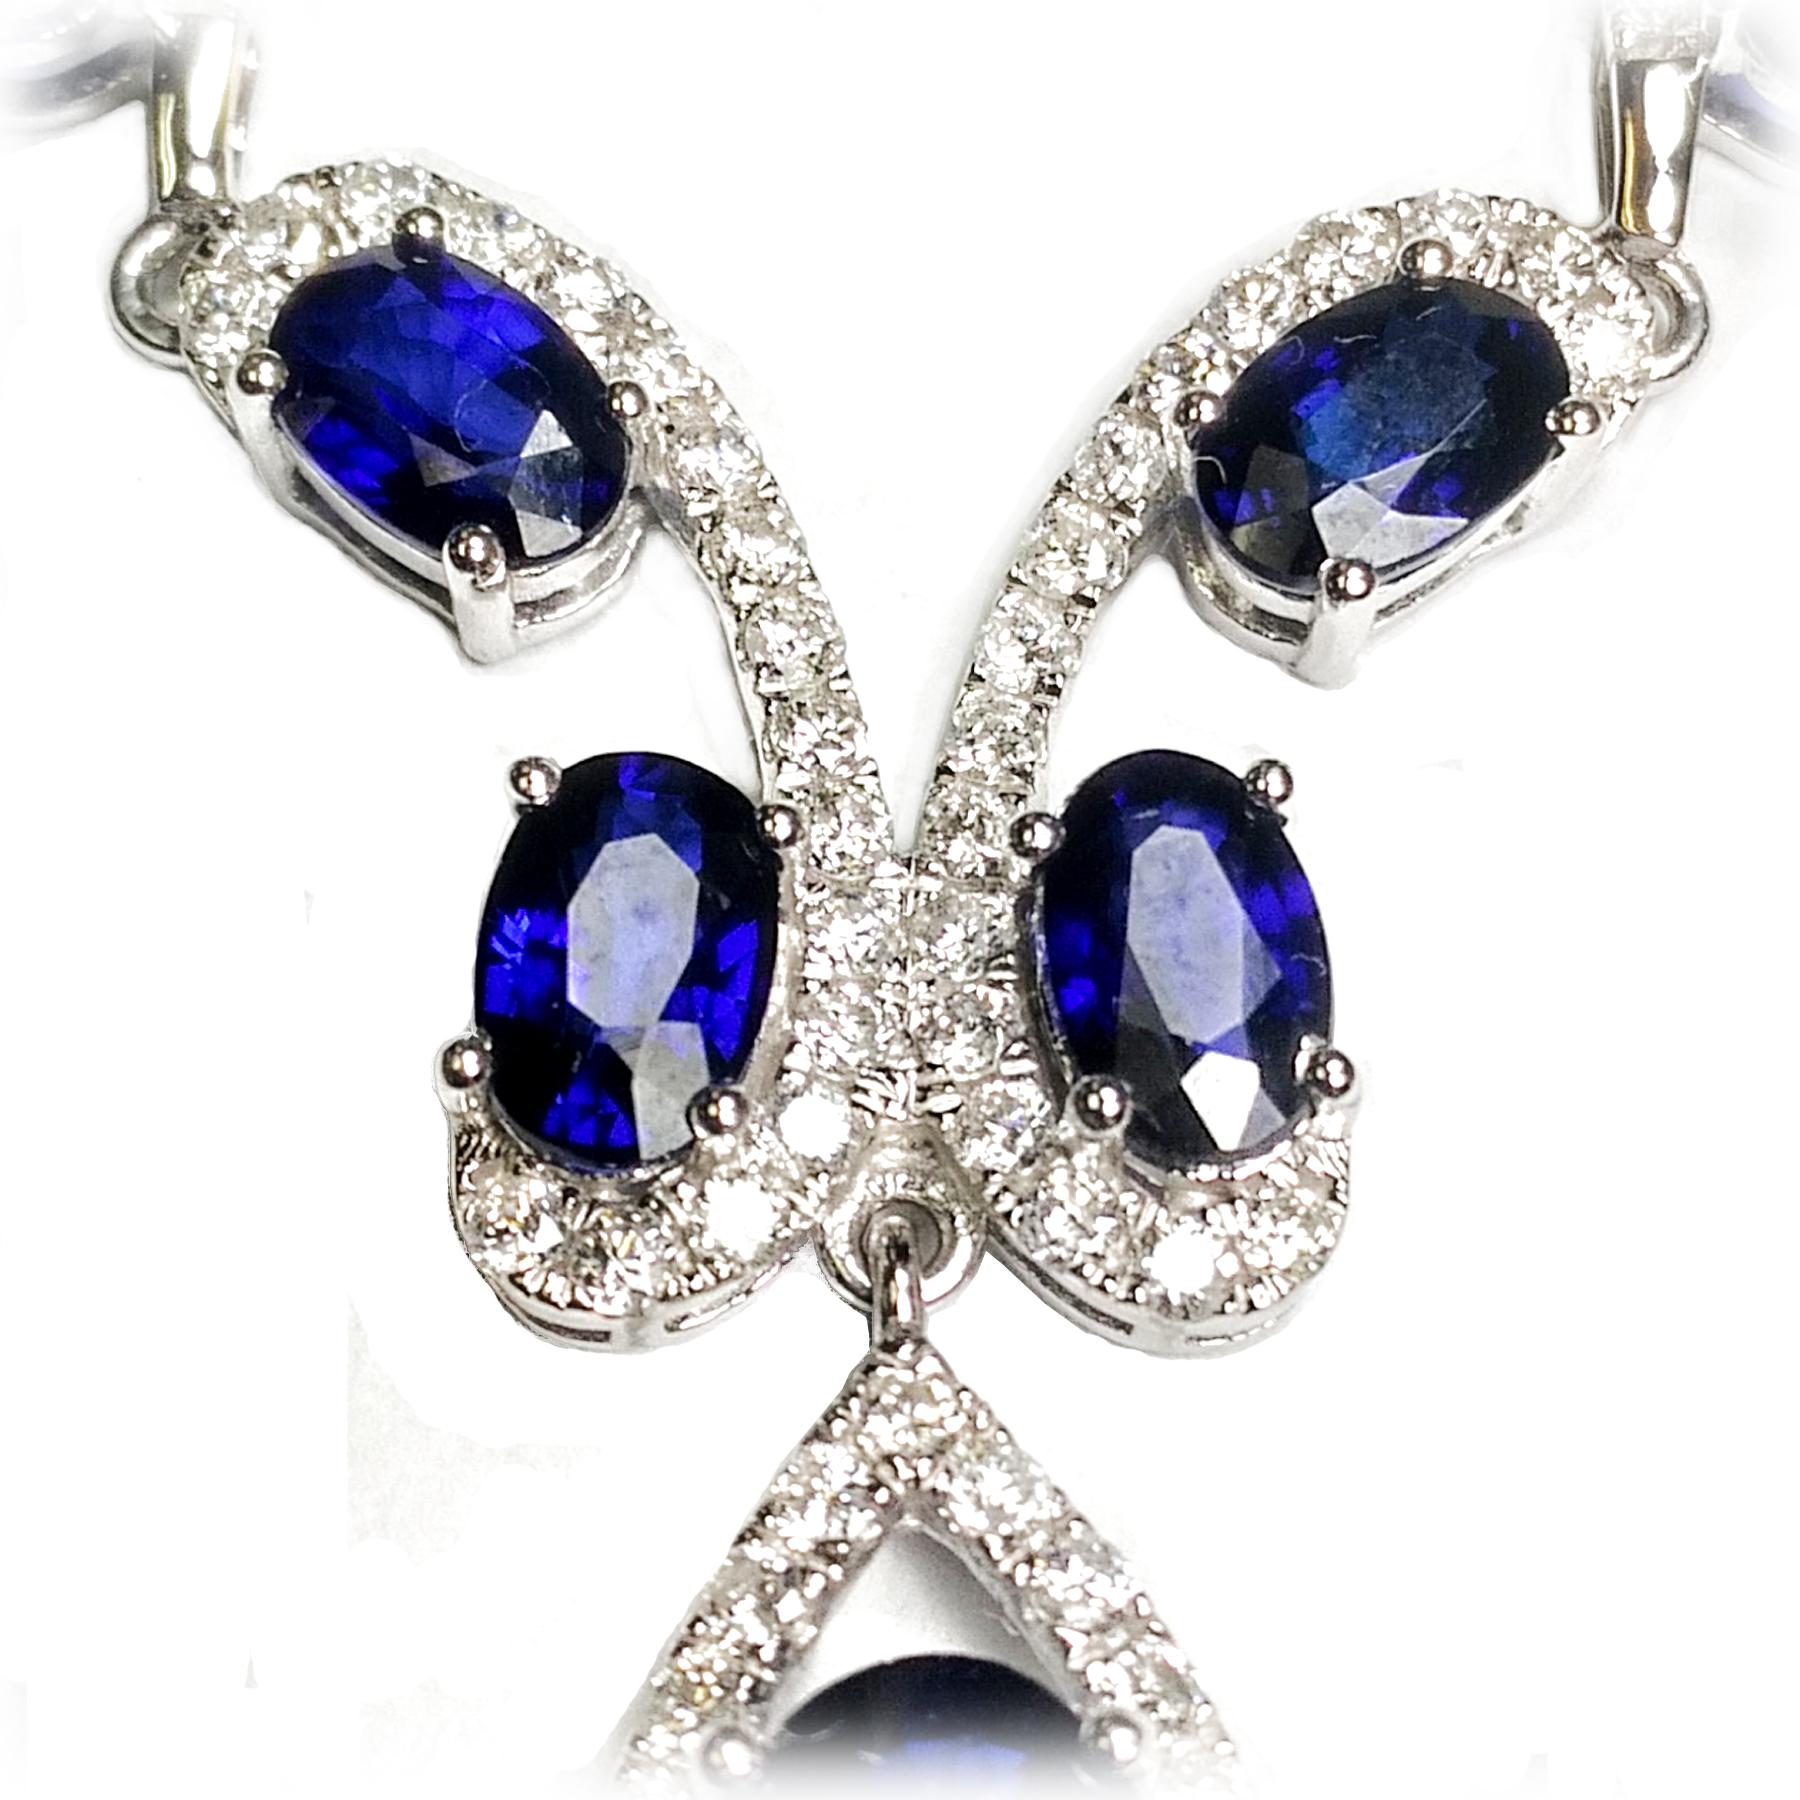 Oval Cut Sapphire Diamond Necklace